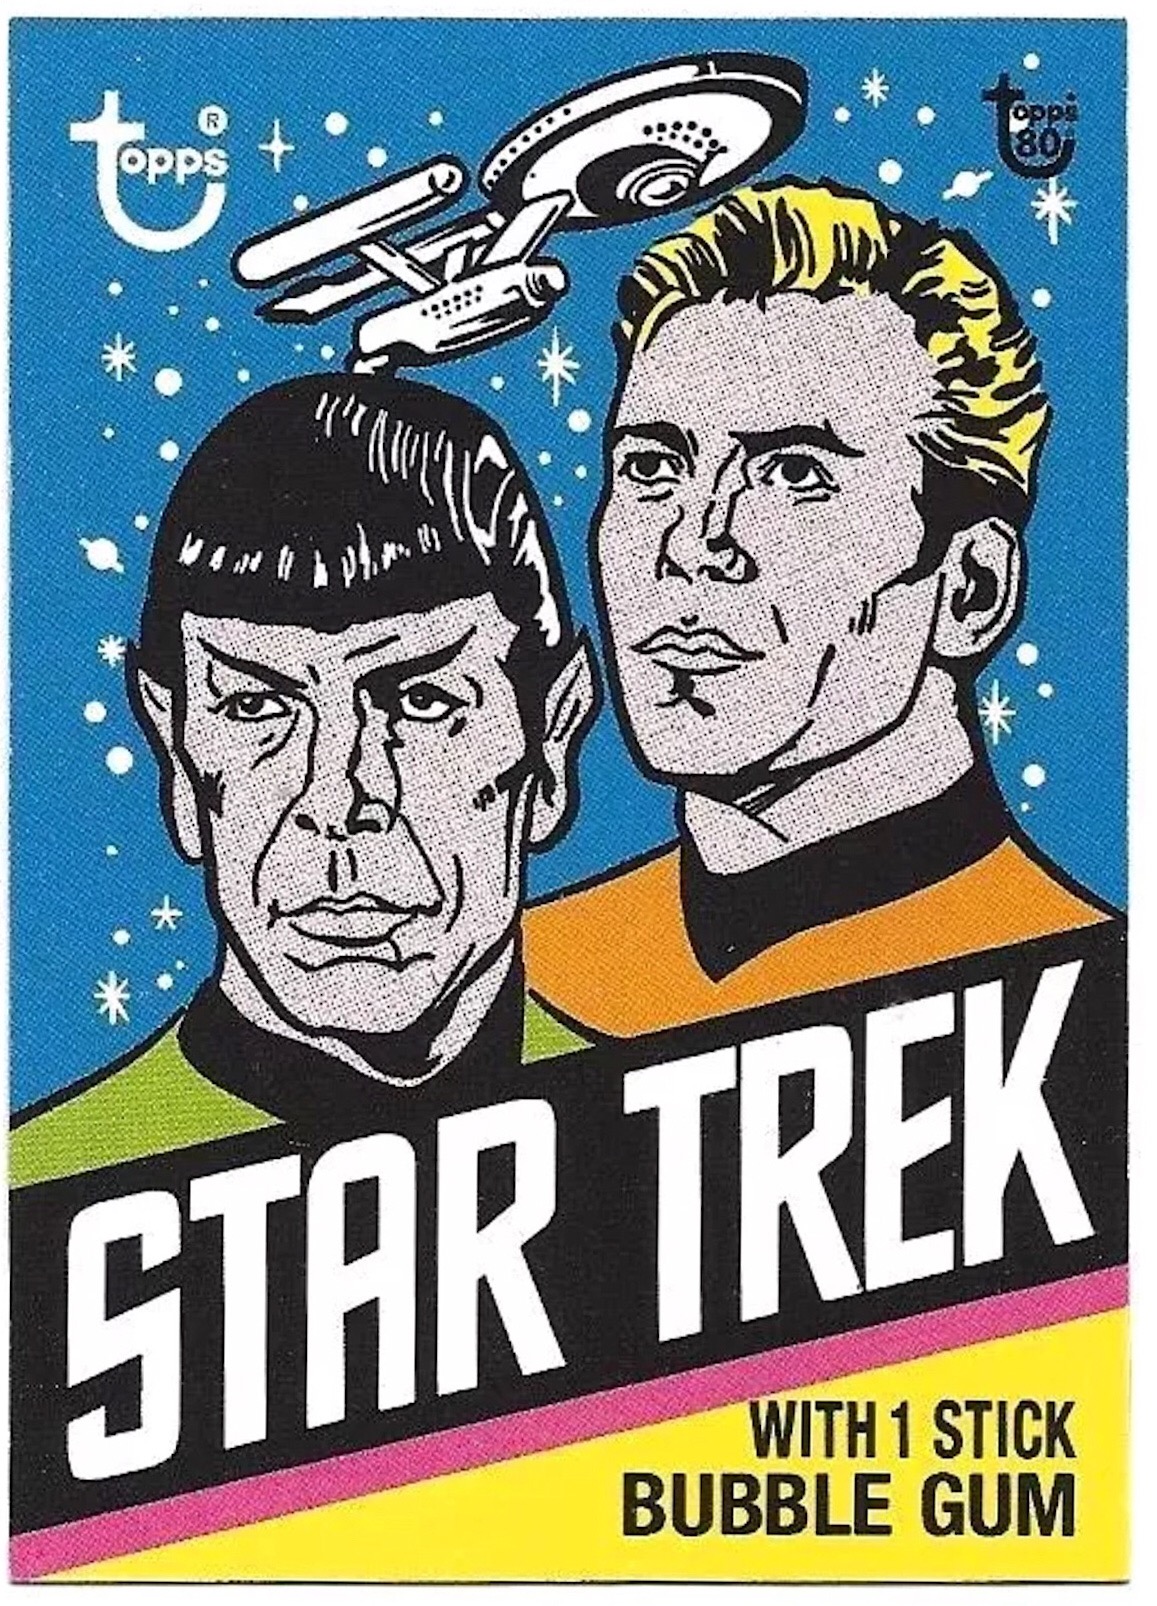 2018 Topps 80th Anniversary Wrapper Art - Star Trek